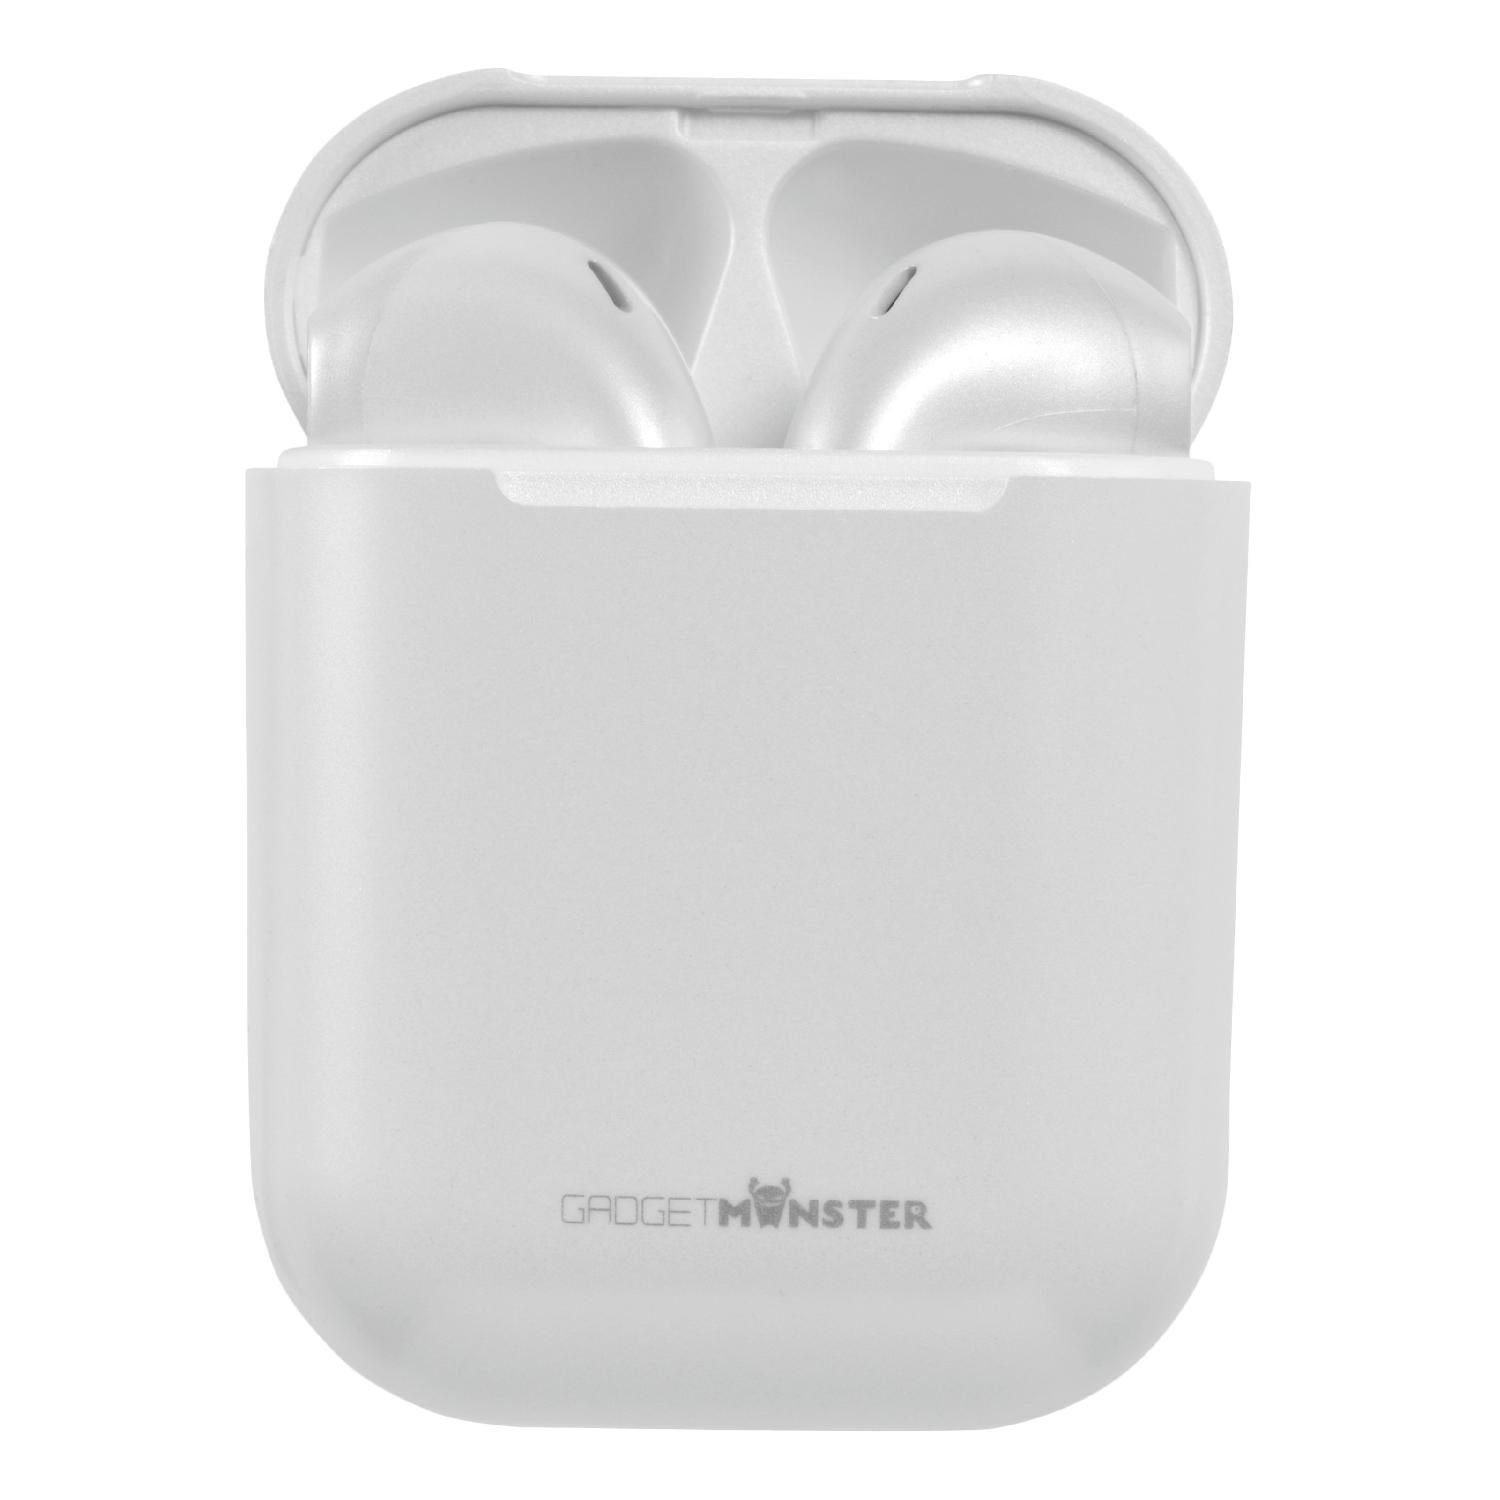 (inkl. TWS zu In-Ear GadgetMonster Kopfhörer Herstellergarantie) bis Jahre 5 10m weiß Bluetooth Std. Kopfhörer Spielzeit 18